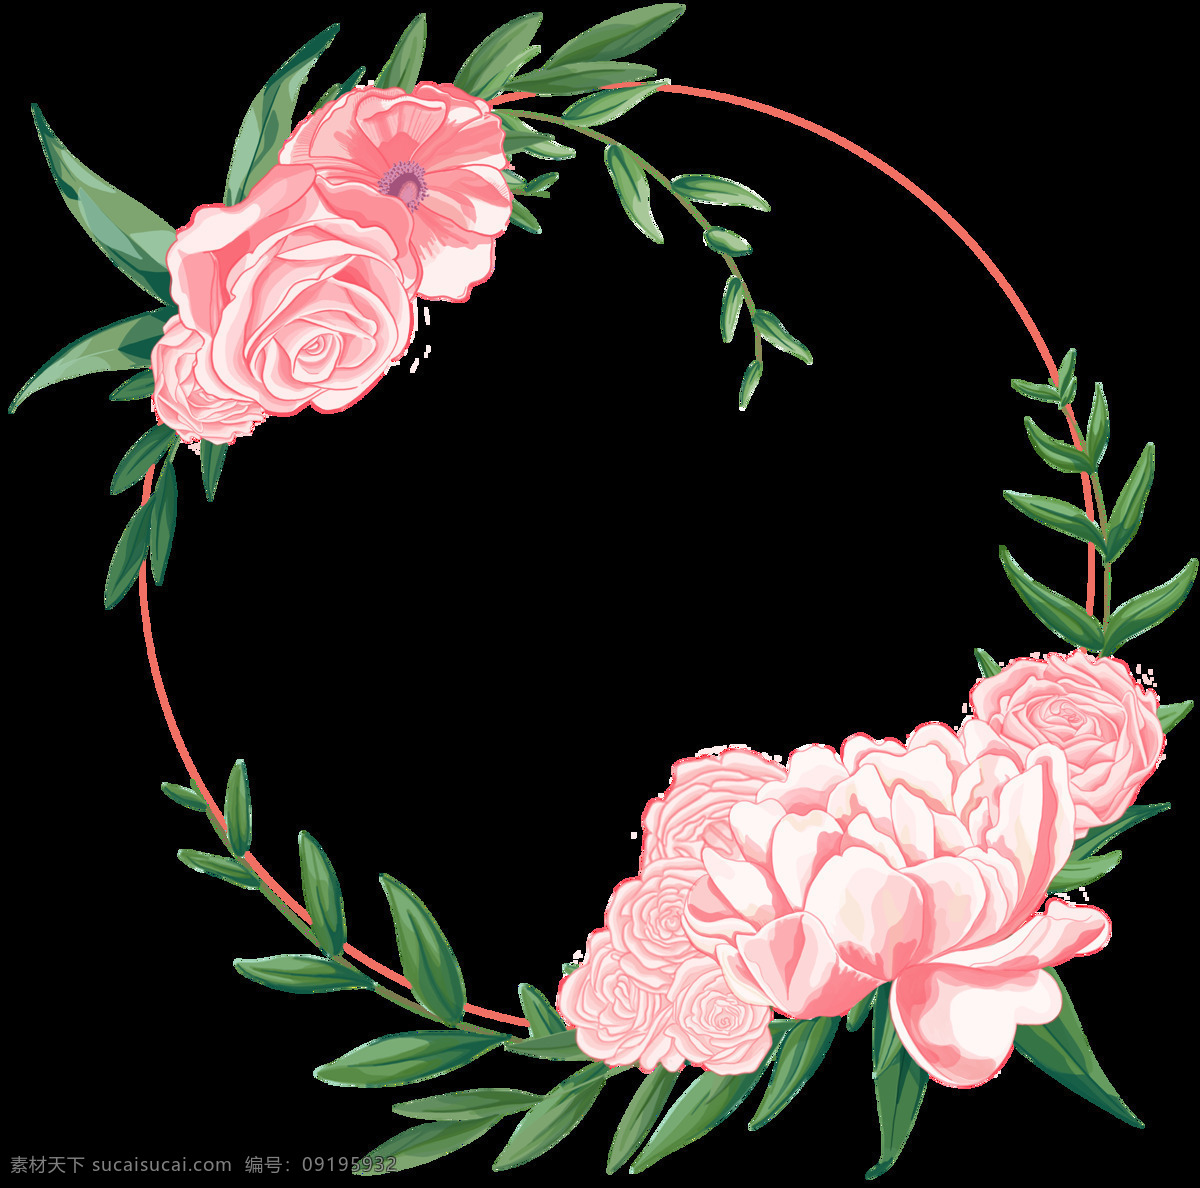 层次分明 花瓣 浪漫粉 绿色 免扣素材 手绘 水彩 透明素材 叶子 装饰图案 生动 玫瑰花 花环 透明